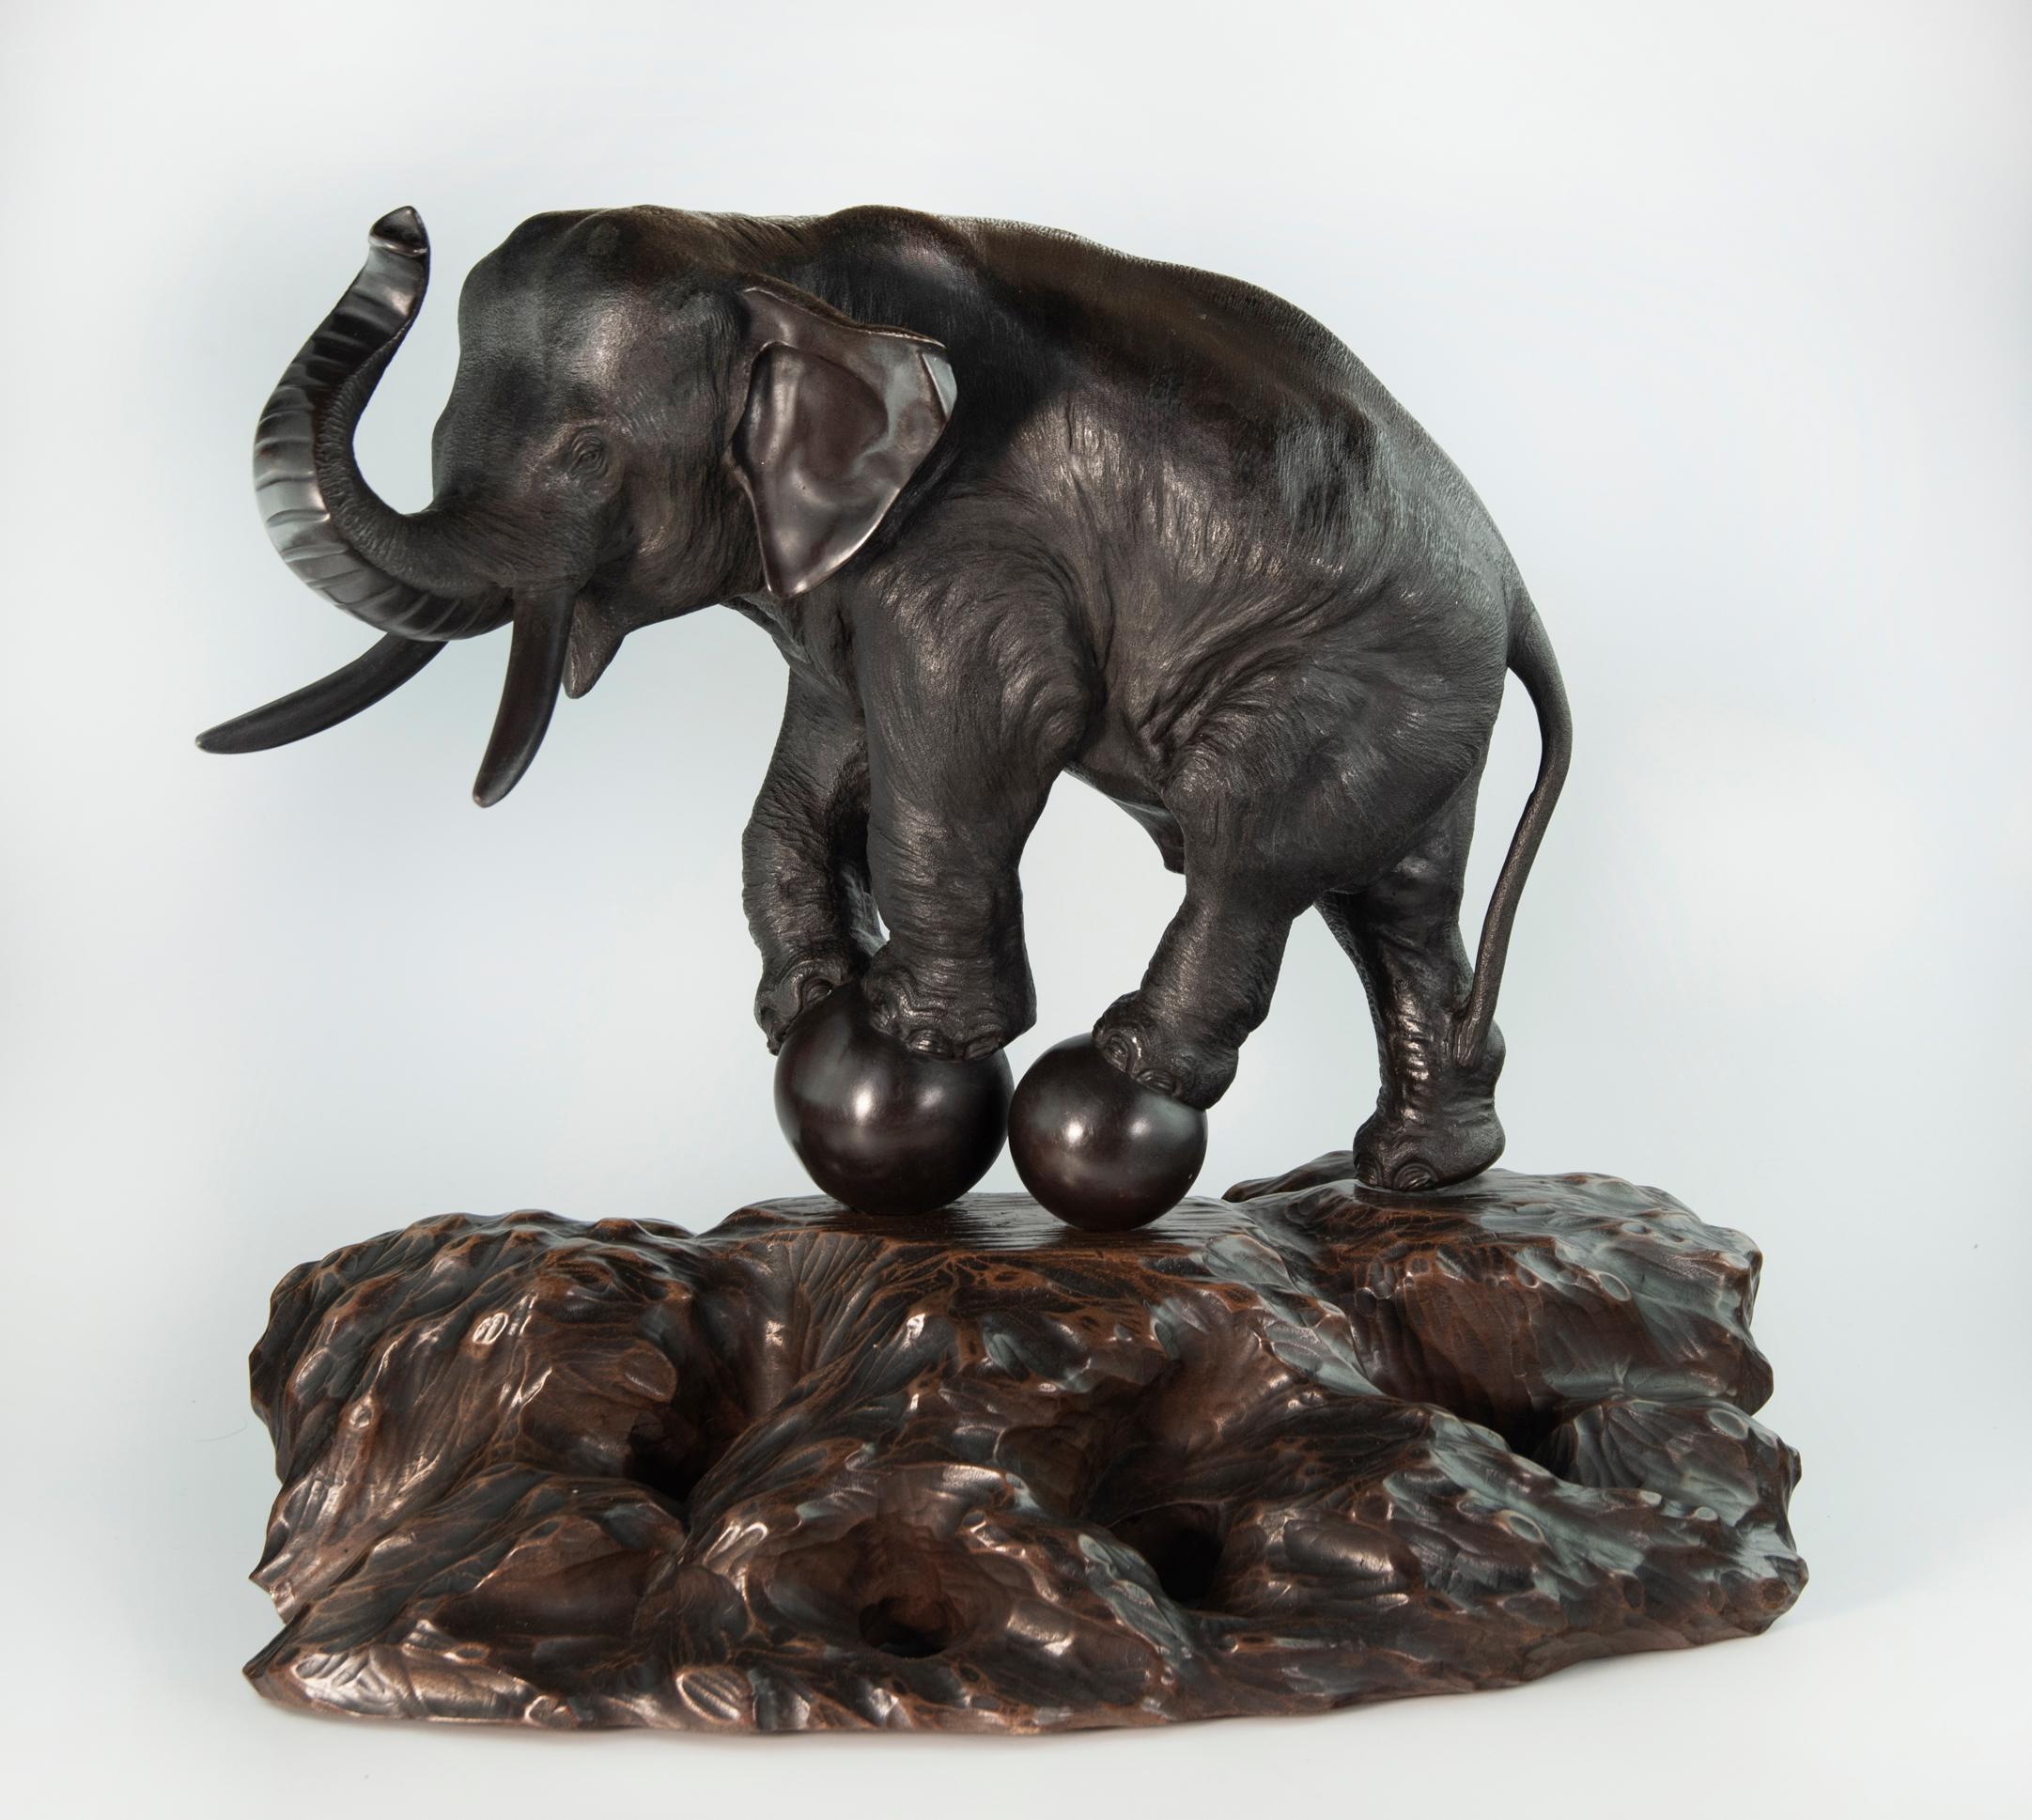 Dans le cadre de notre collection d'œuvres d'art japonaises, nous sommes ravis de proposer cette étude inhabituelle de la période Meiji 1868-1912, représentant un grand éléphant faisant un numéro d'équilibriste sur deux énormes sphères en bronze